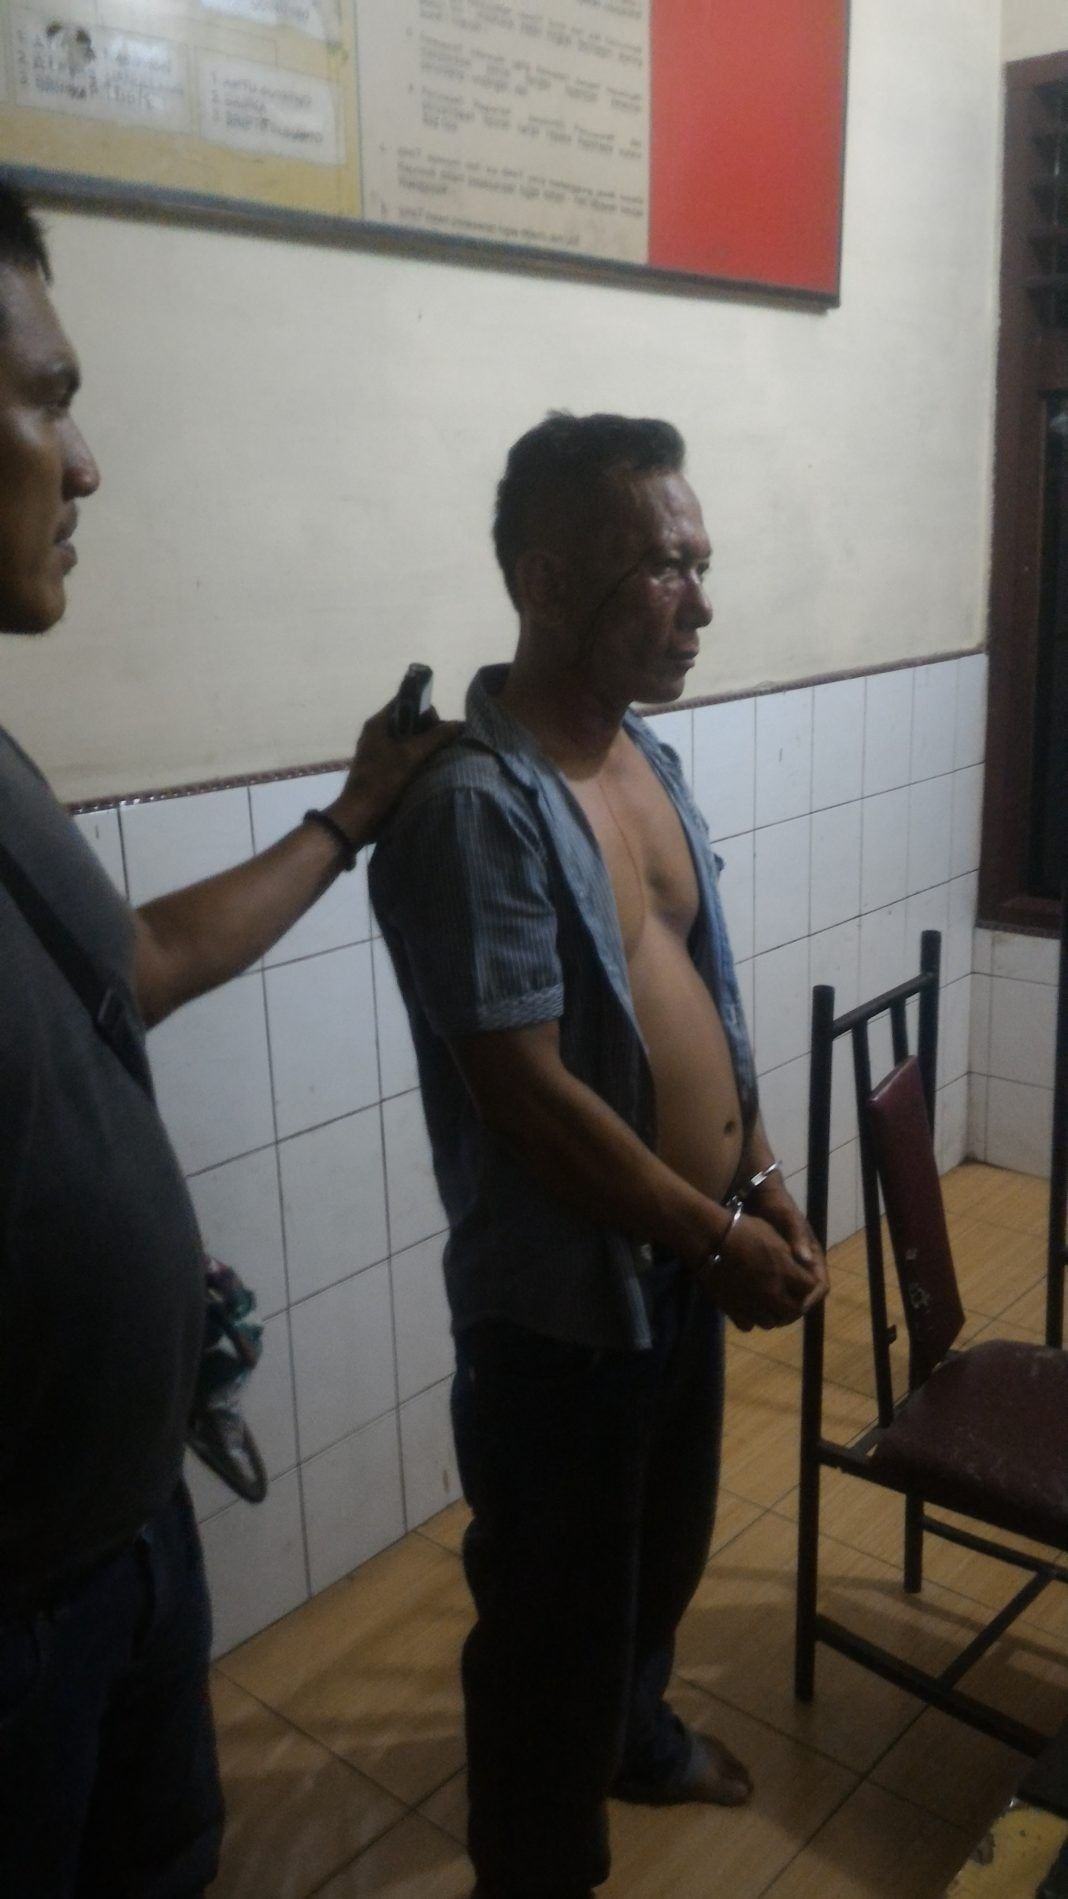 Syahrial Efendi Sinaga (terduga pelaku pencurian) saat digiring petugas kedalam ruangan Sentra Pelayanan Kepolisian (SPK) Polsek Percut Sei Tuan